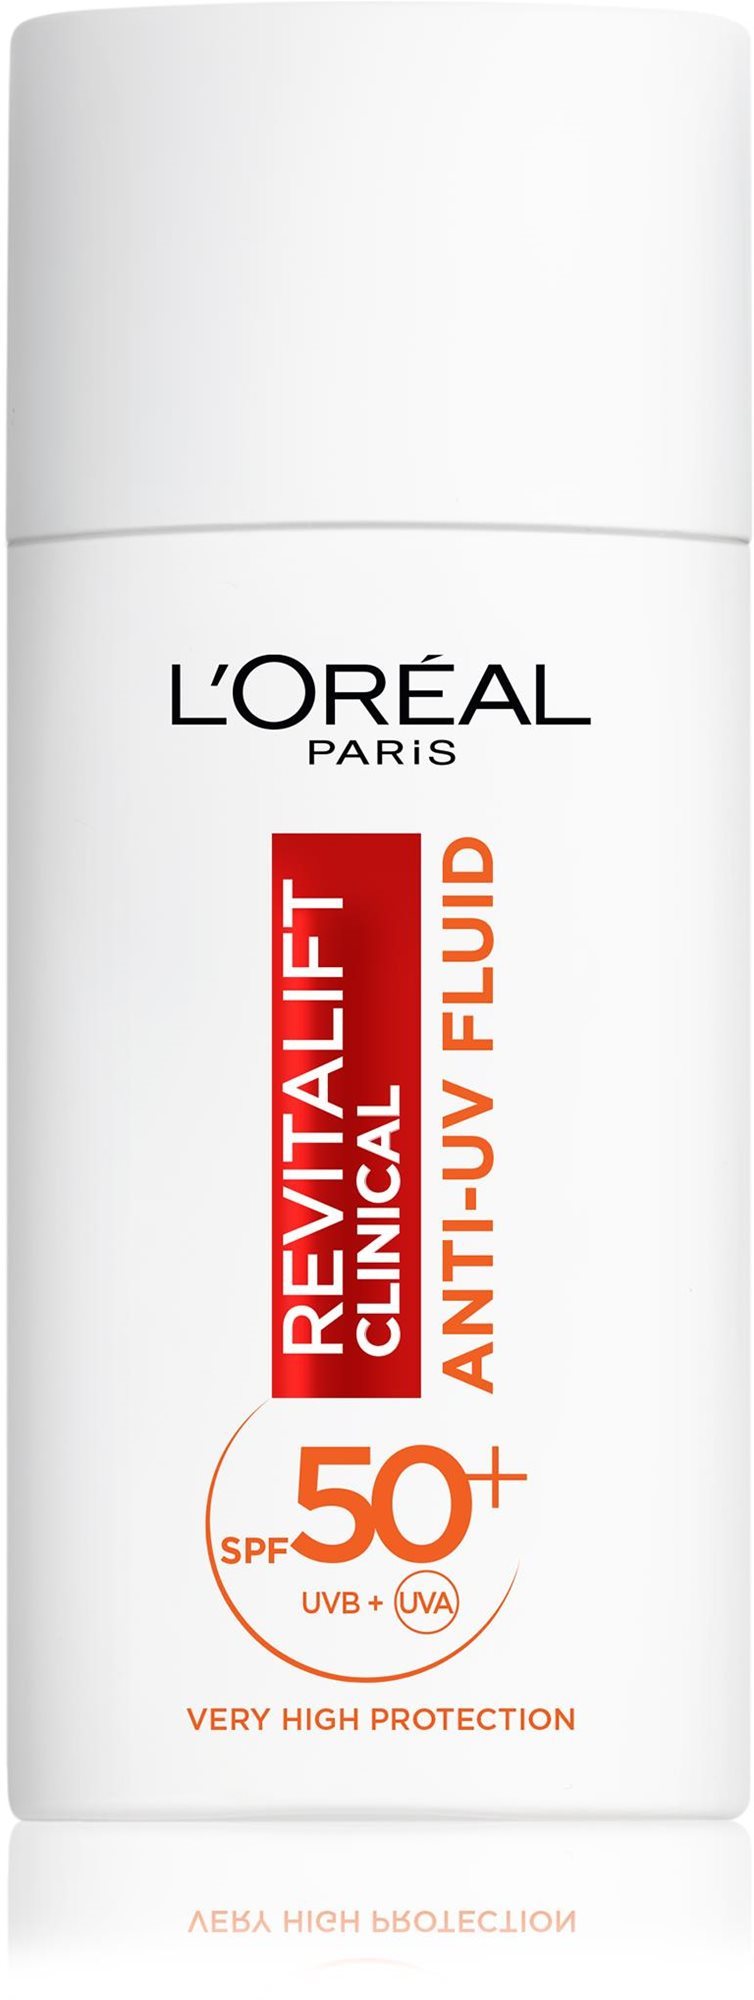 L'ORÉAL PARIS Revitalift Clinical Nappali Anti-UV Fluid nagyon magas SPF50+ védelemmel és C-vitaminnal 50 ml